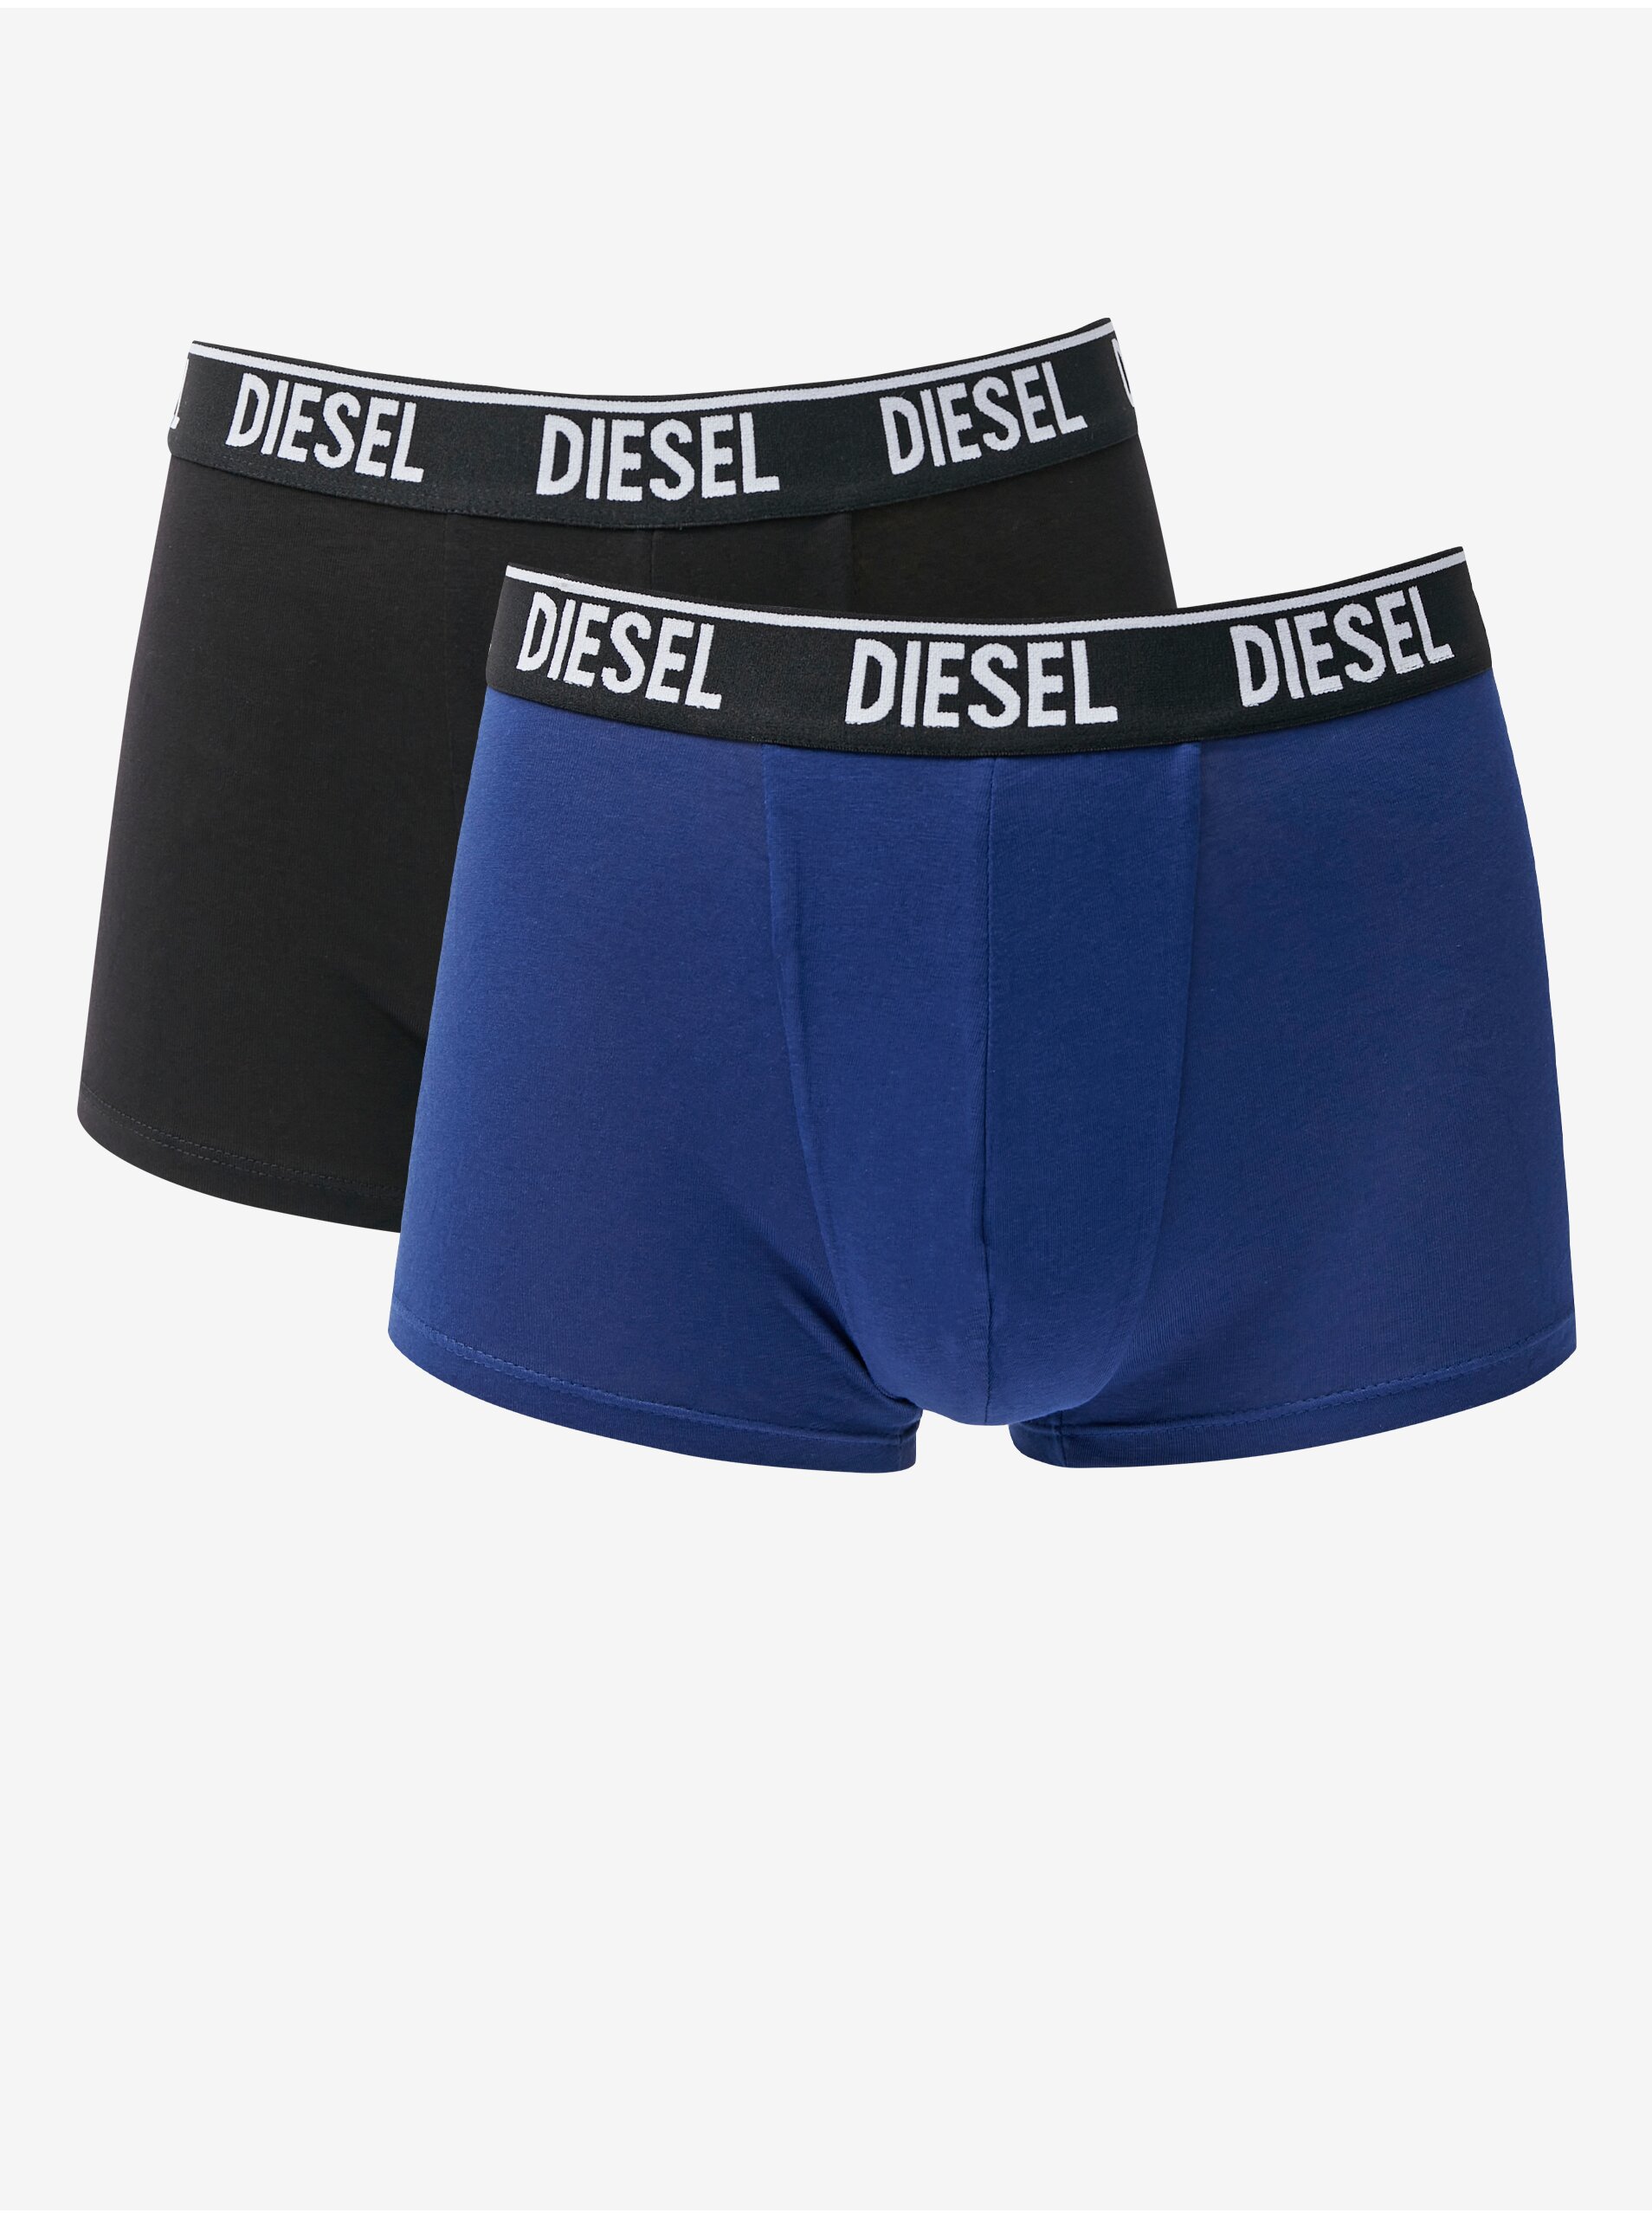 Sada dvou pánských boxerek v tmavě modré a černé barvě Diesel - Pánské